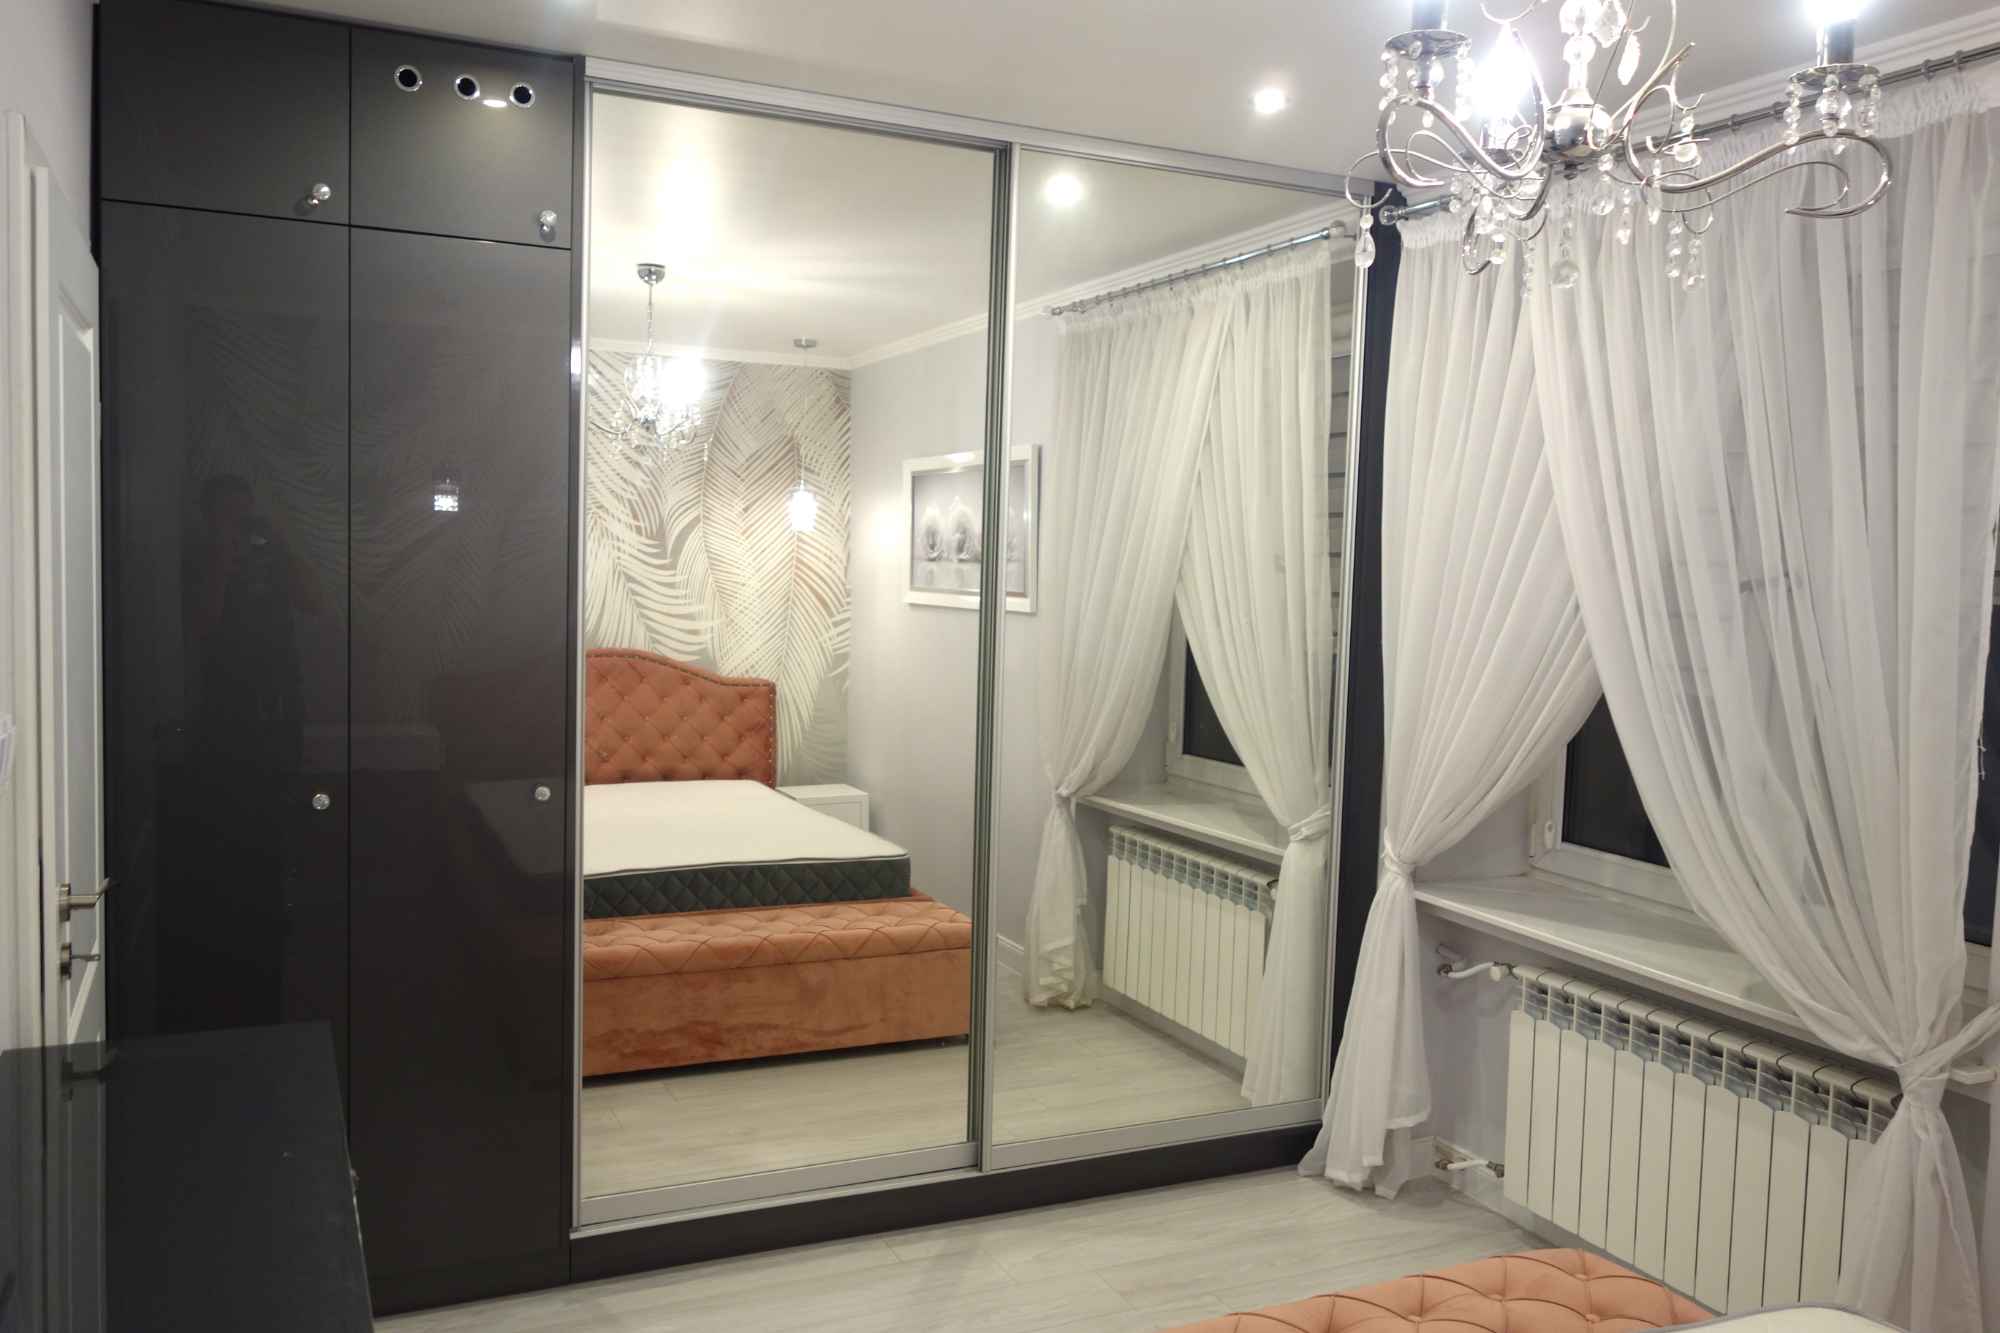 Sprzedam luksusowe mieszkanie w centrum Kielc – styl Glamour Kielce - zdjęcie 9